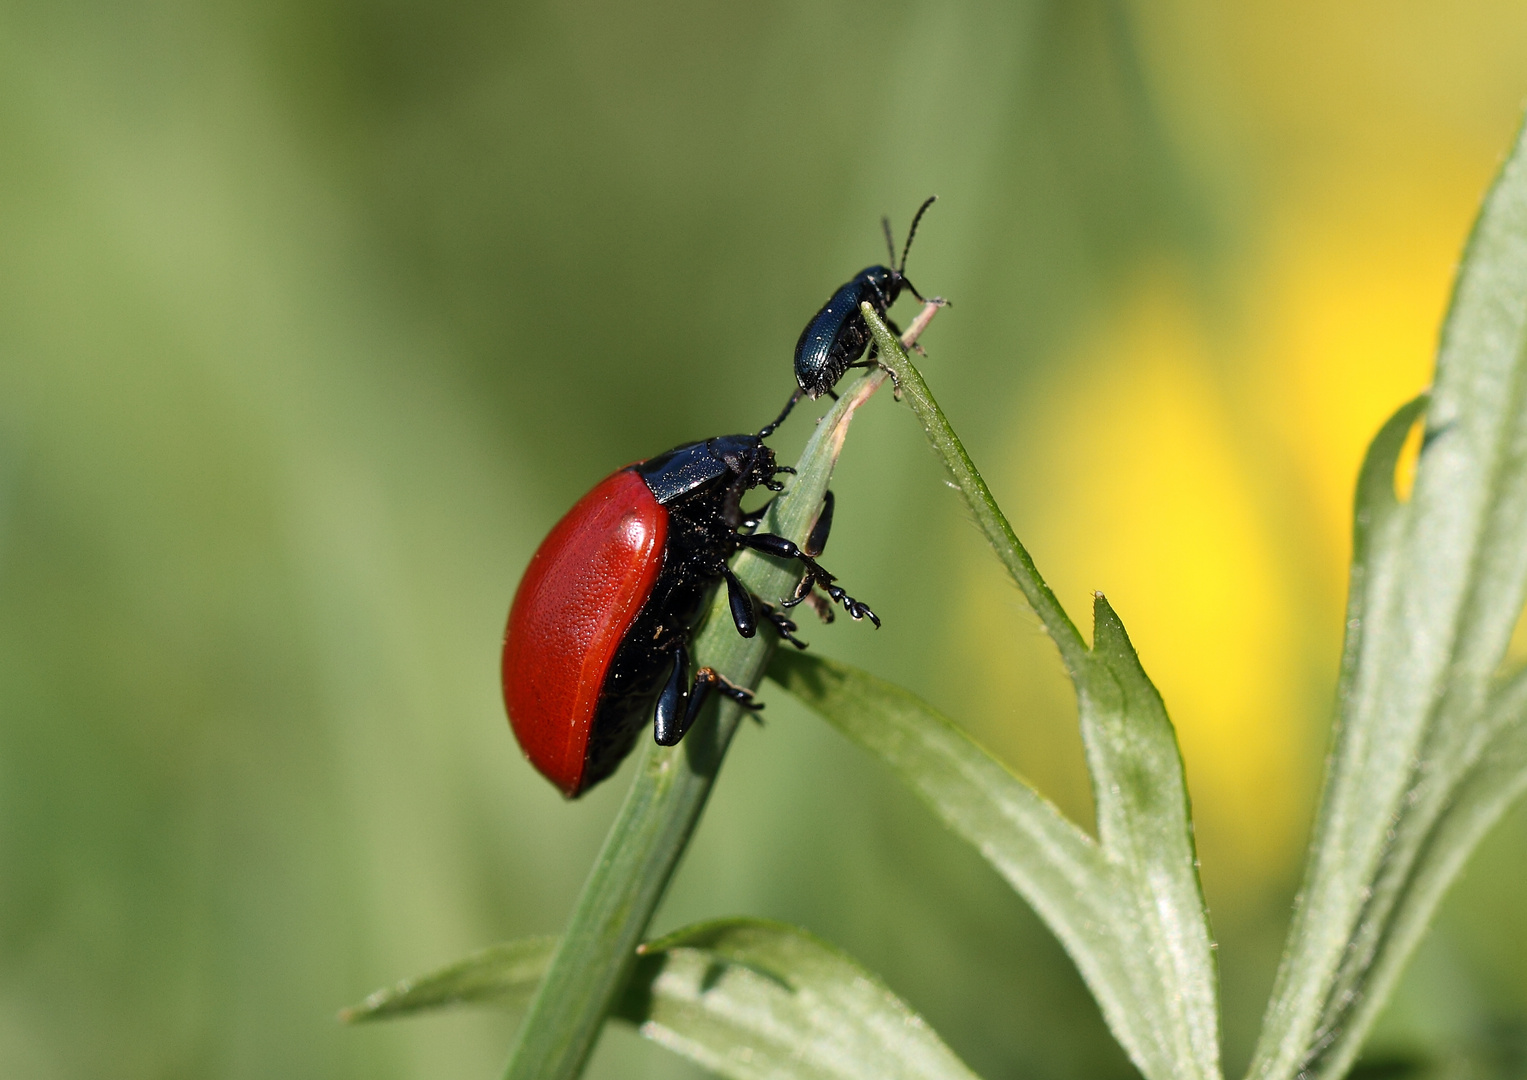 Der große Rote mit dem kleinen schwarzen Käfer